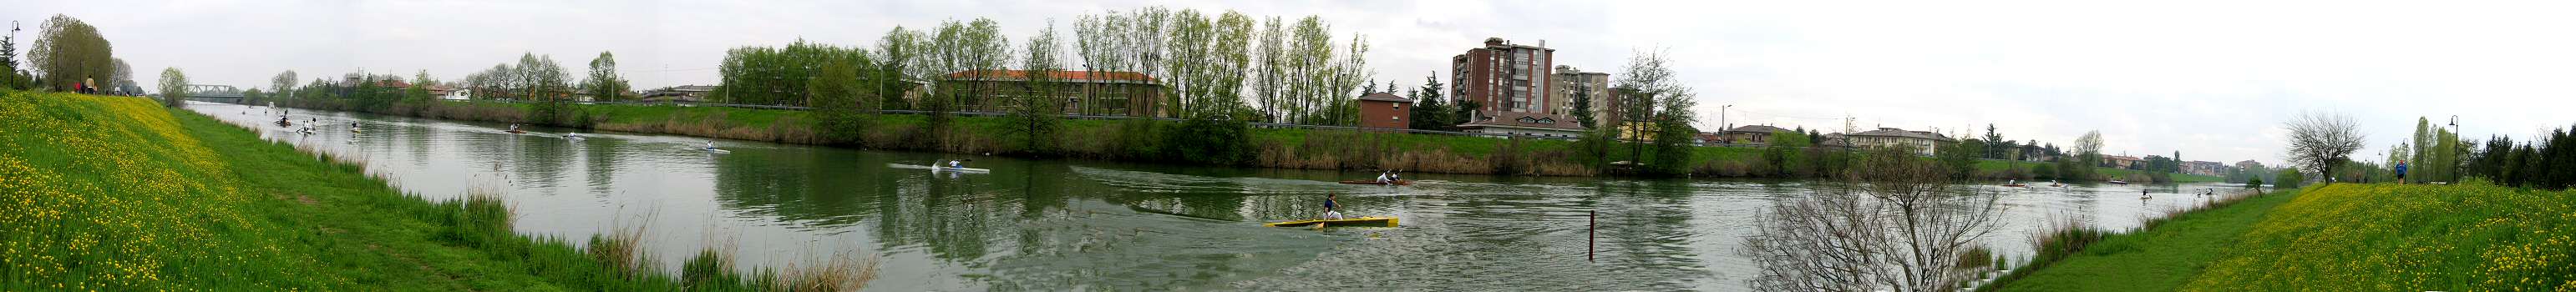 Padova - Canale Scaricatore, fiume Bacchiglione